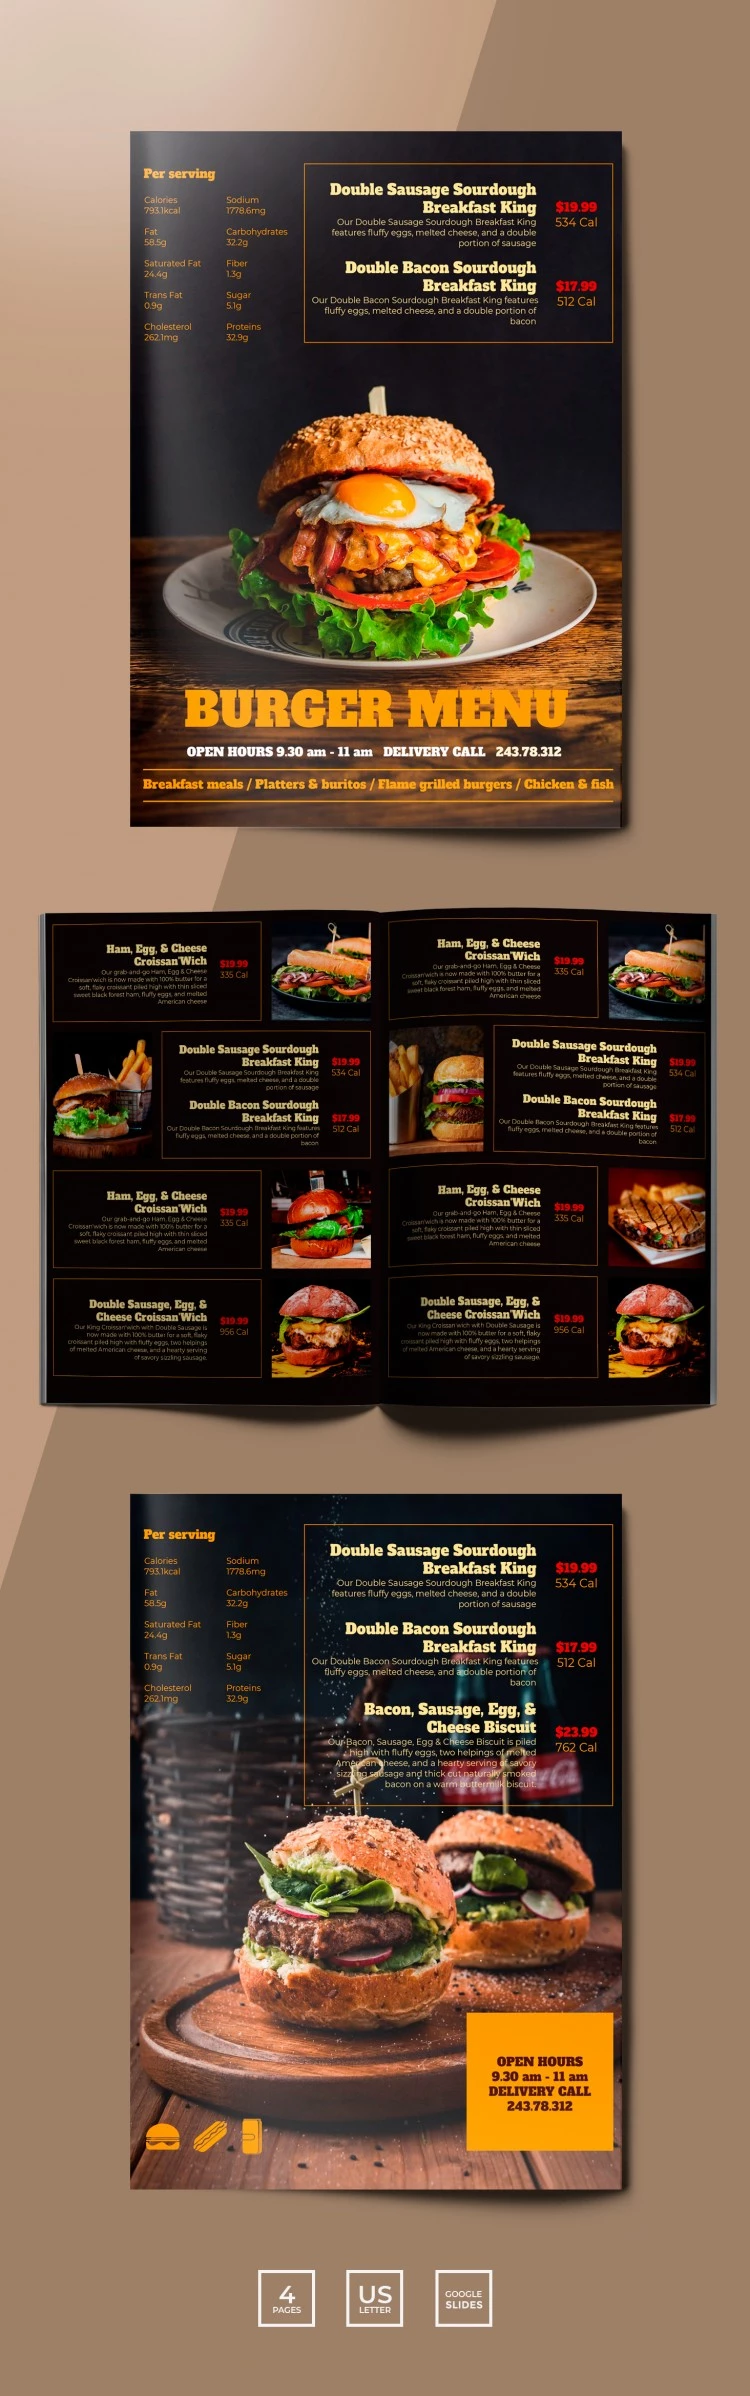 汉堡菜单餐厅 - free Google Docs Template - 10061760